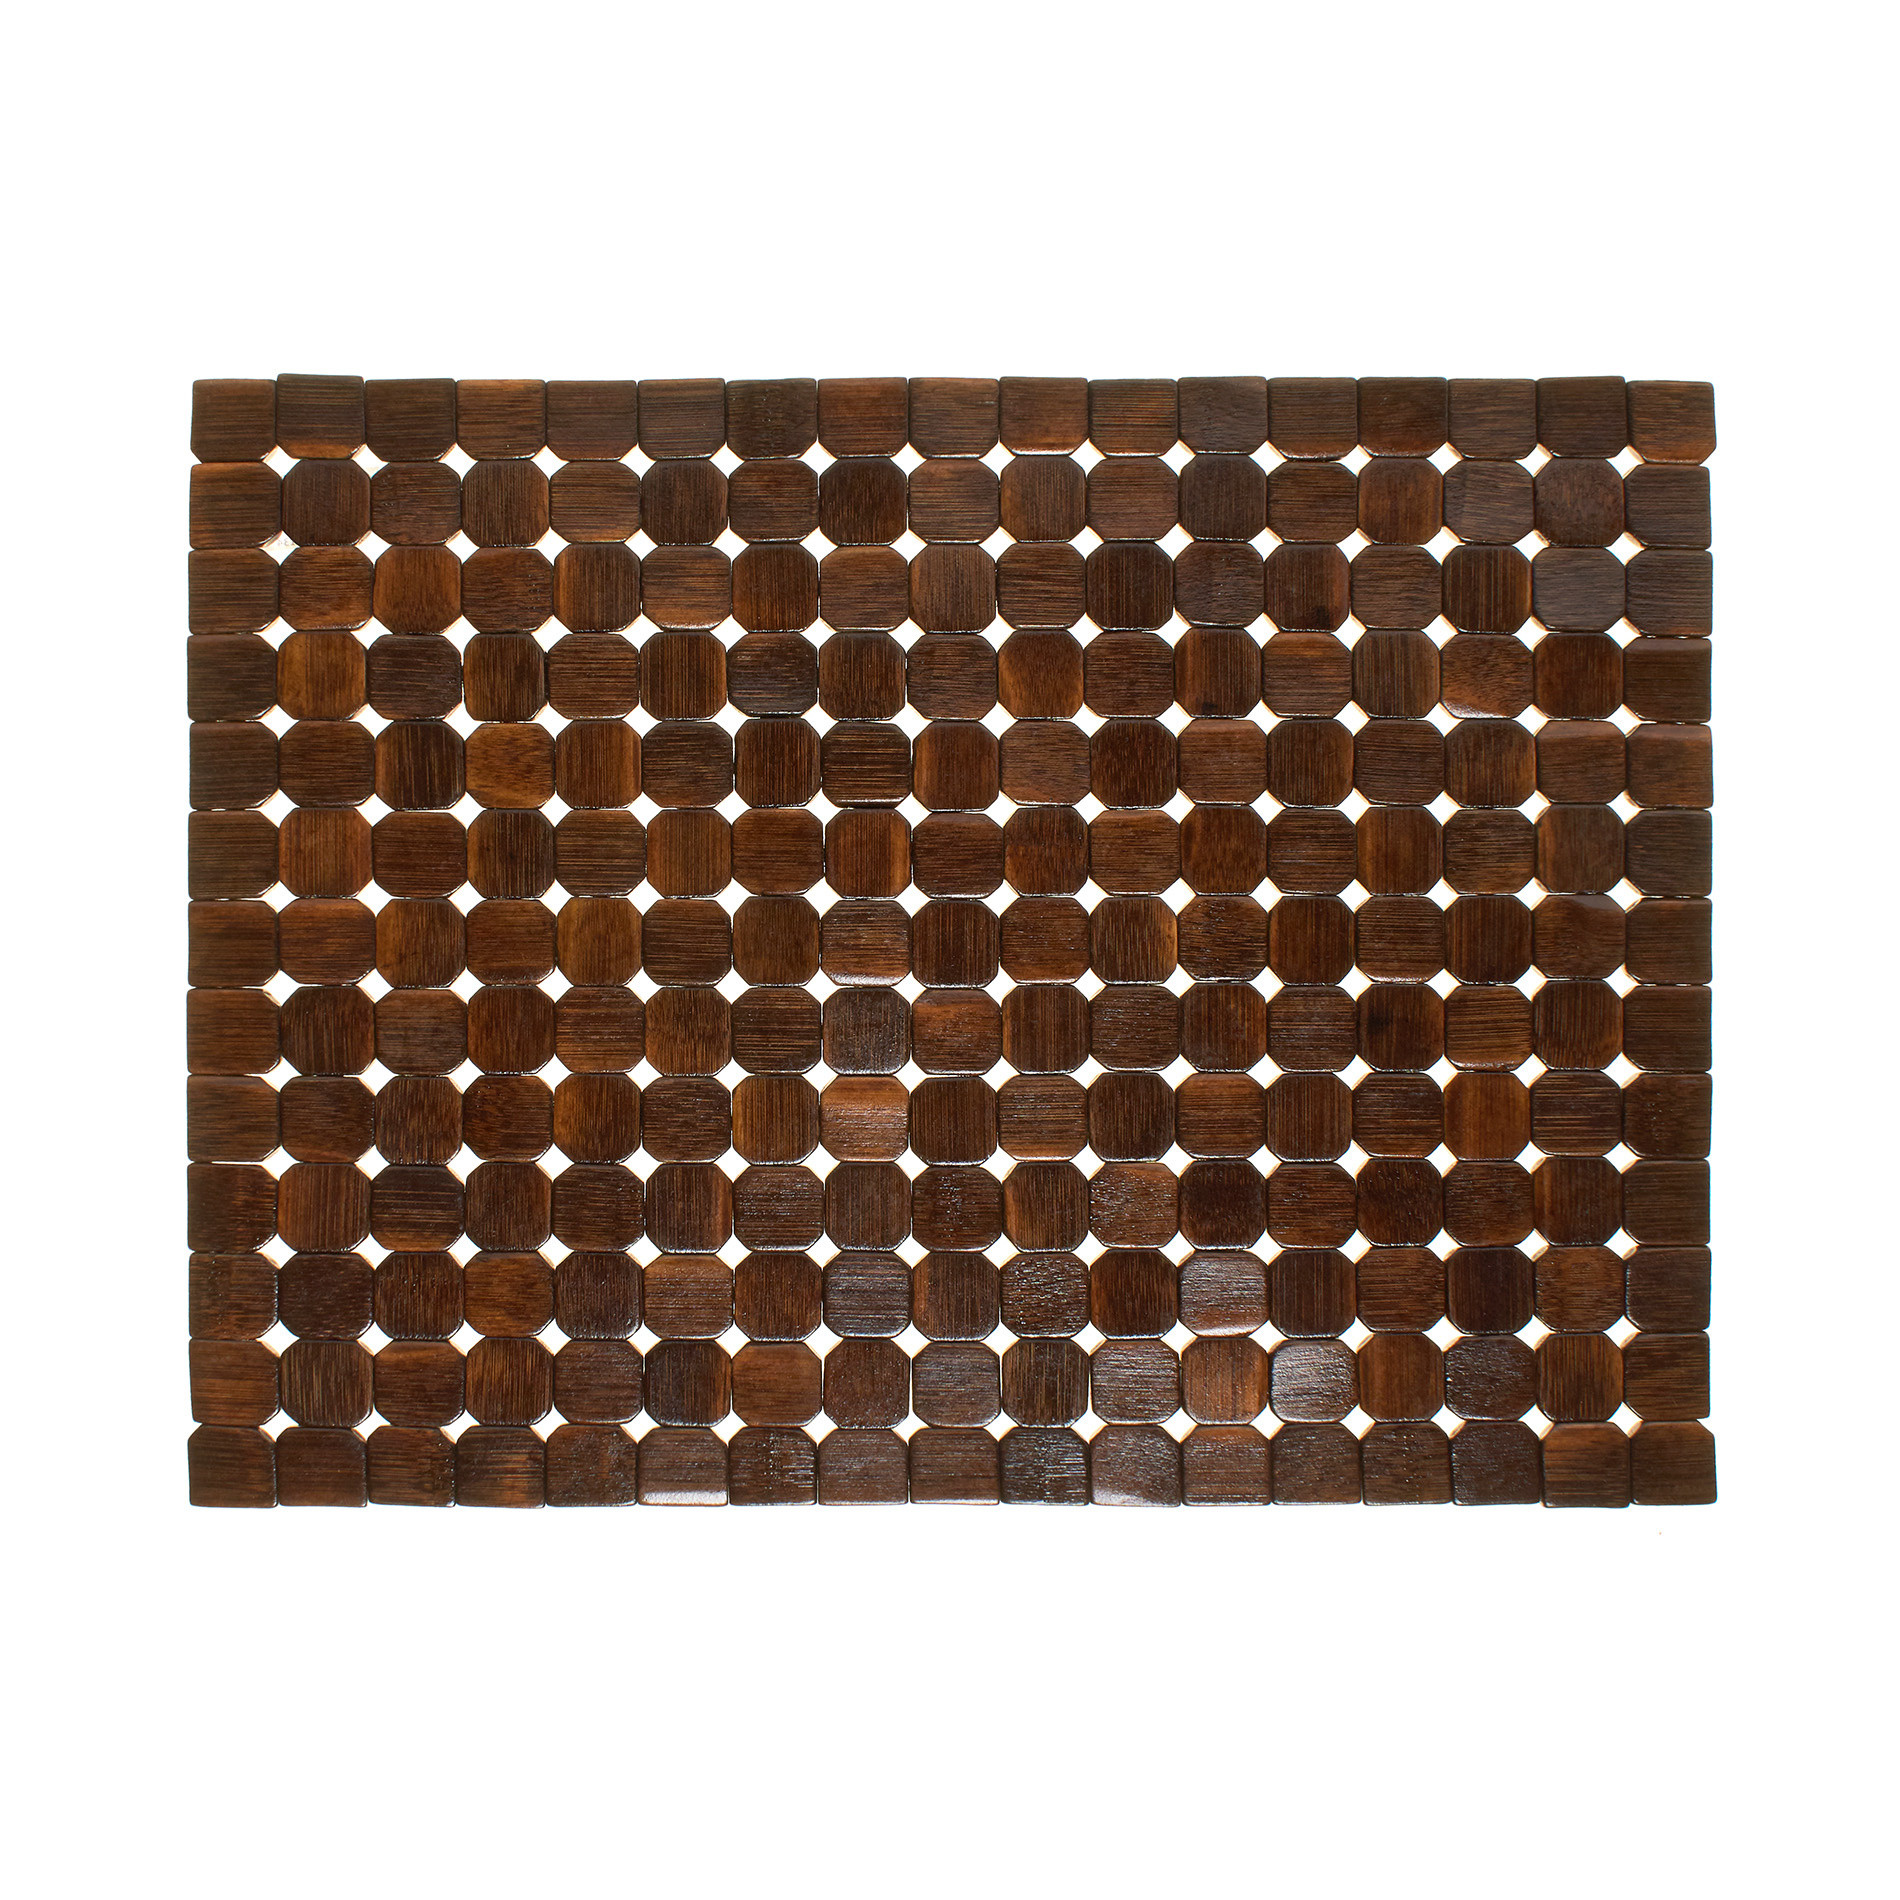 Расписной бамбуковый коврик для столовых приборов Coincasa, темно-коричневый расписной бамбуковый коврик для столовых приборов coincasa темно коричневый